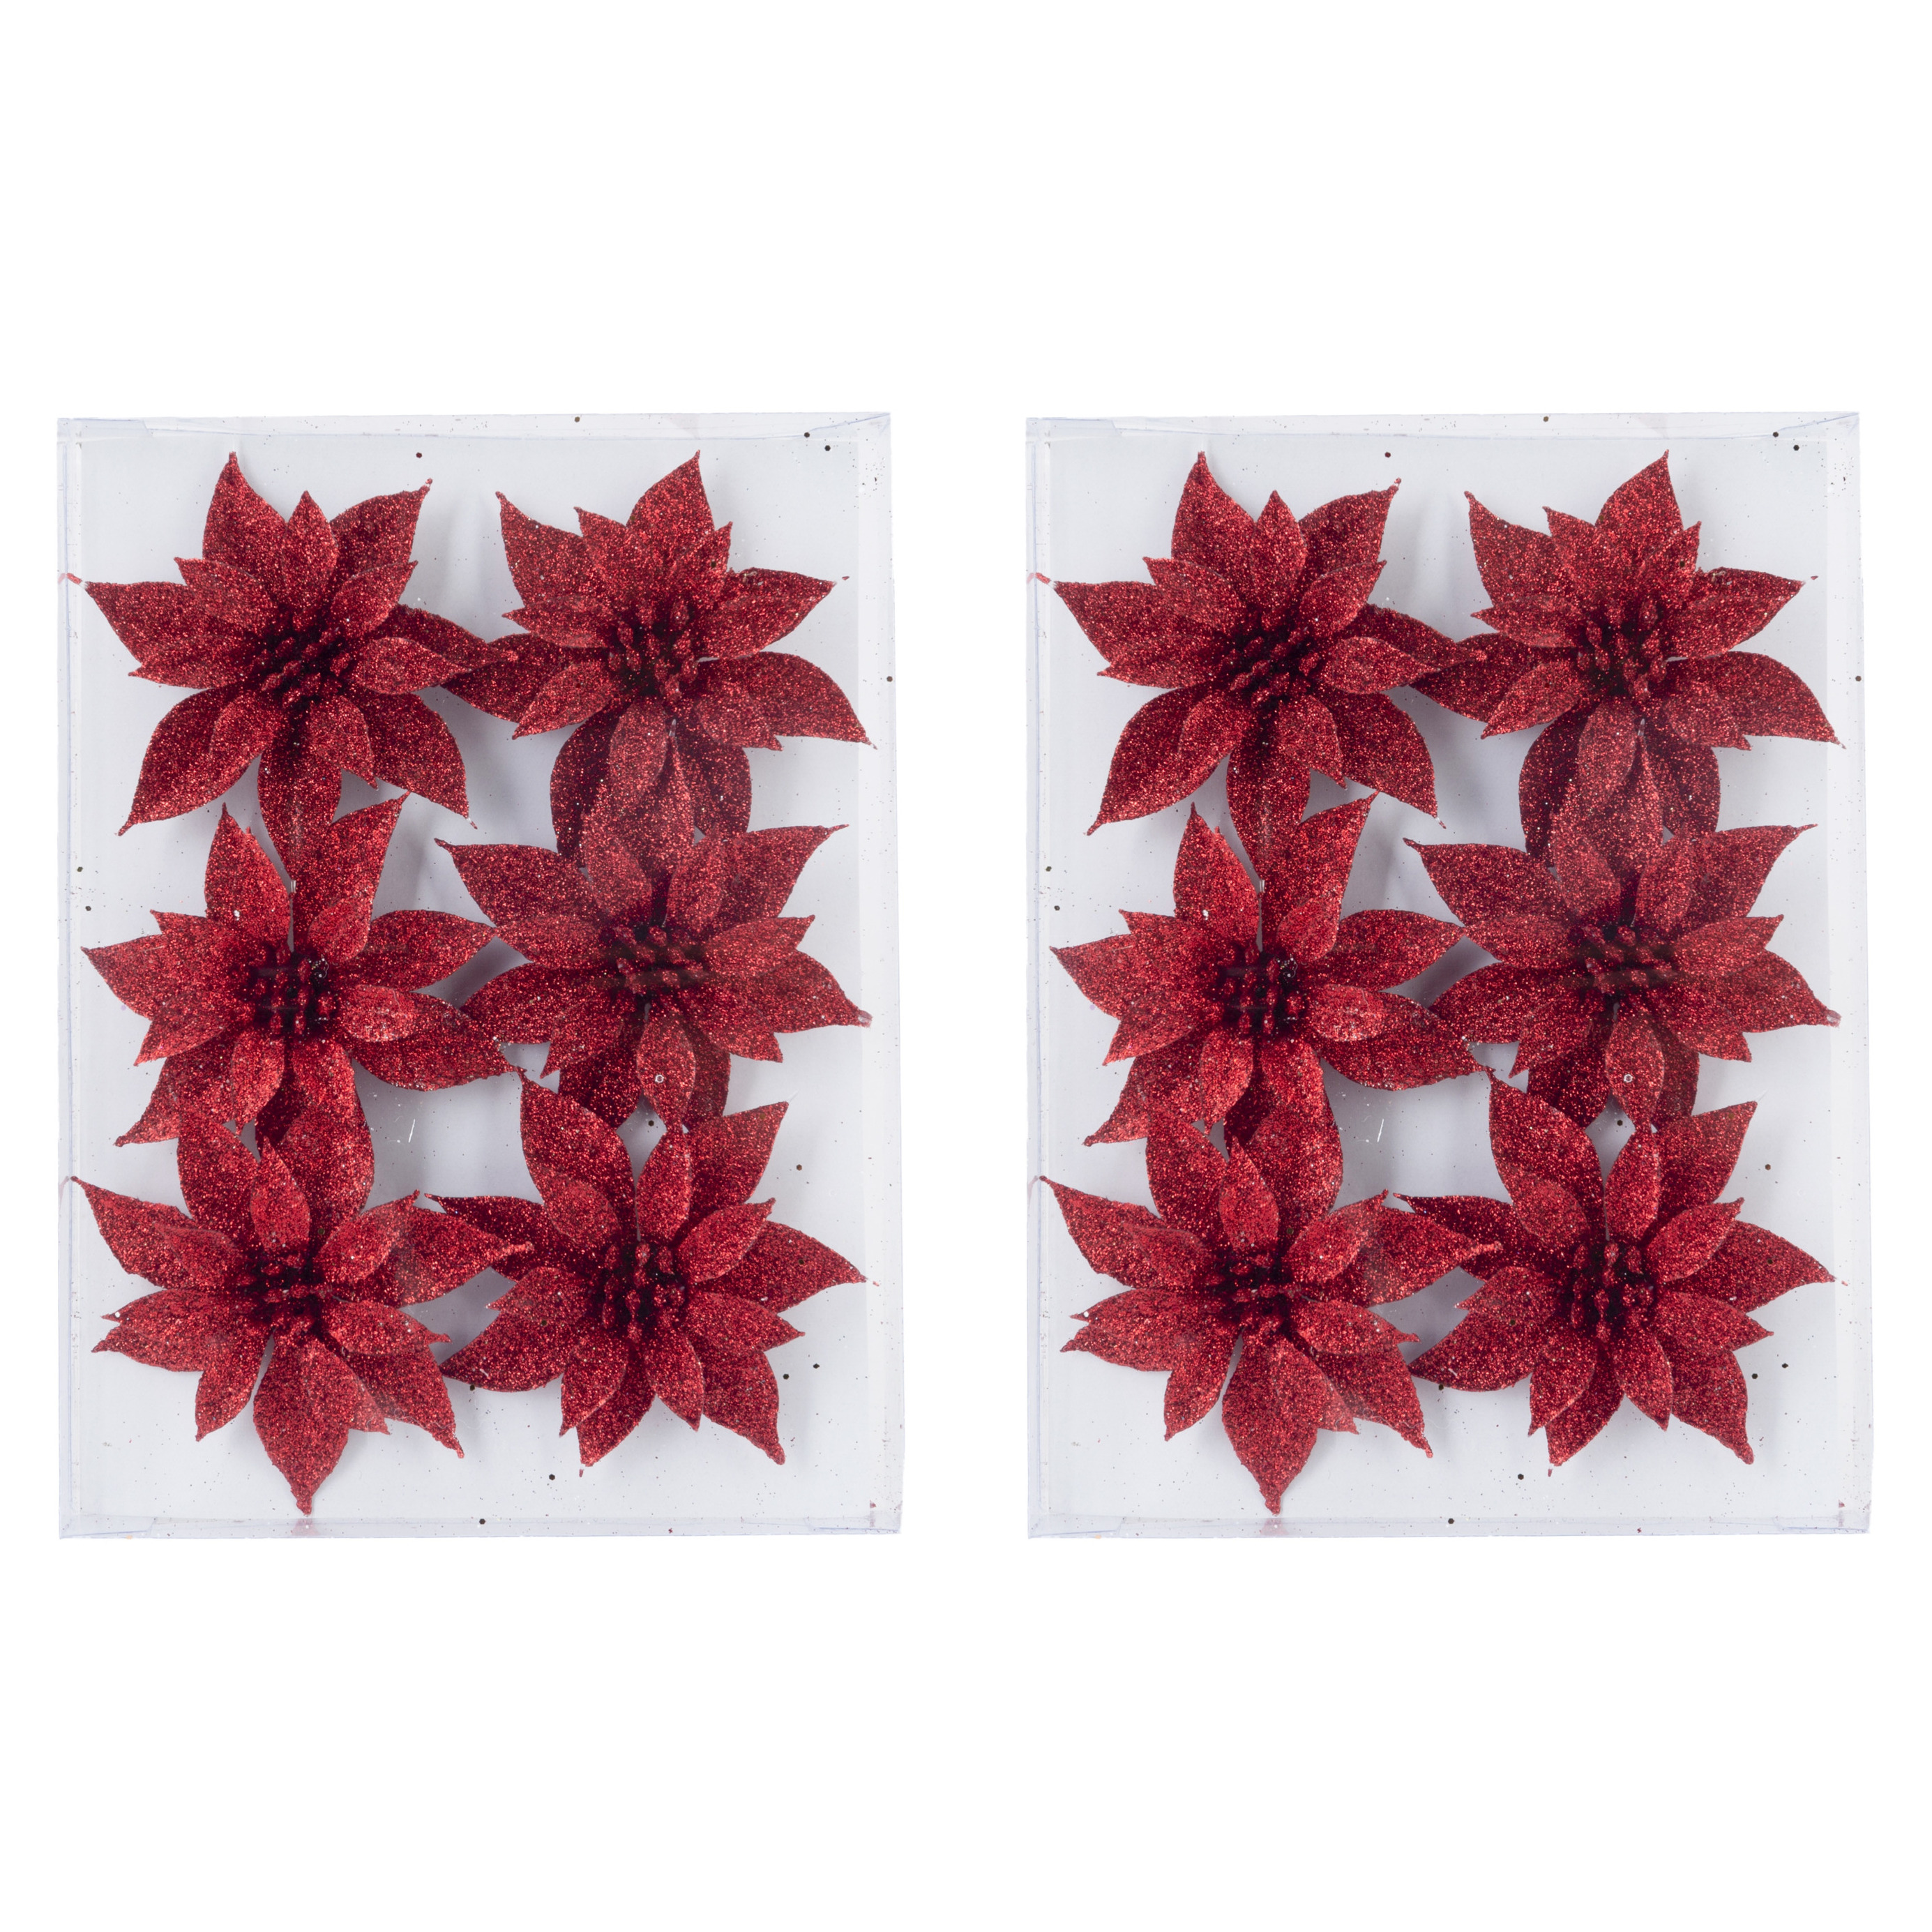 24x stuks decoratie bloemen rozen rood glitter op ijzerdraad 8 cm